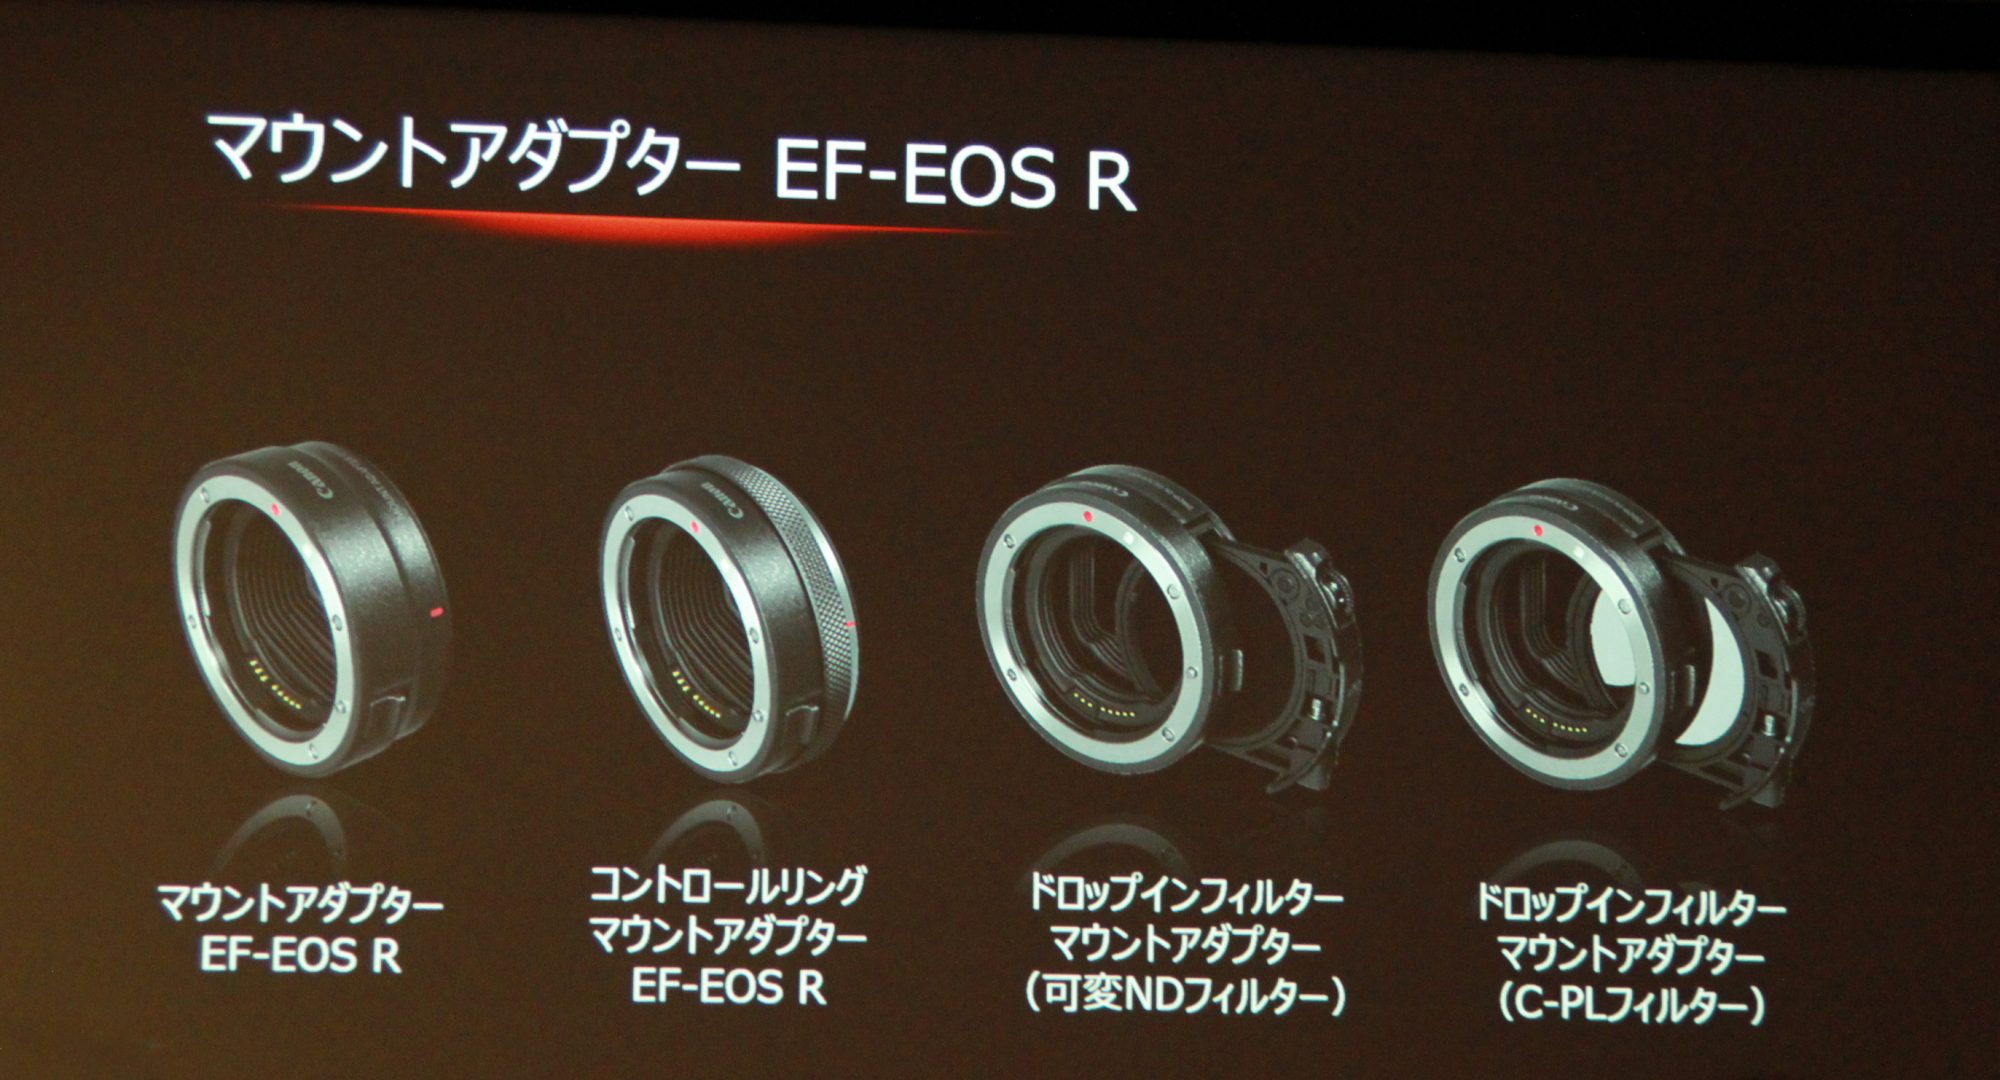 キヤノン、新型マウント「RFマウント」を採用するフルサイズミラーレス一眼「EOS R」誕生。RFレンズ4本と、EFレンズを活用できるマウント